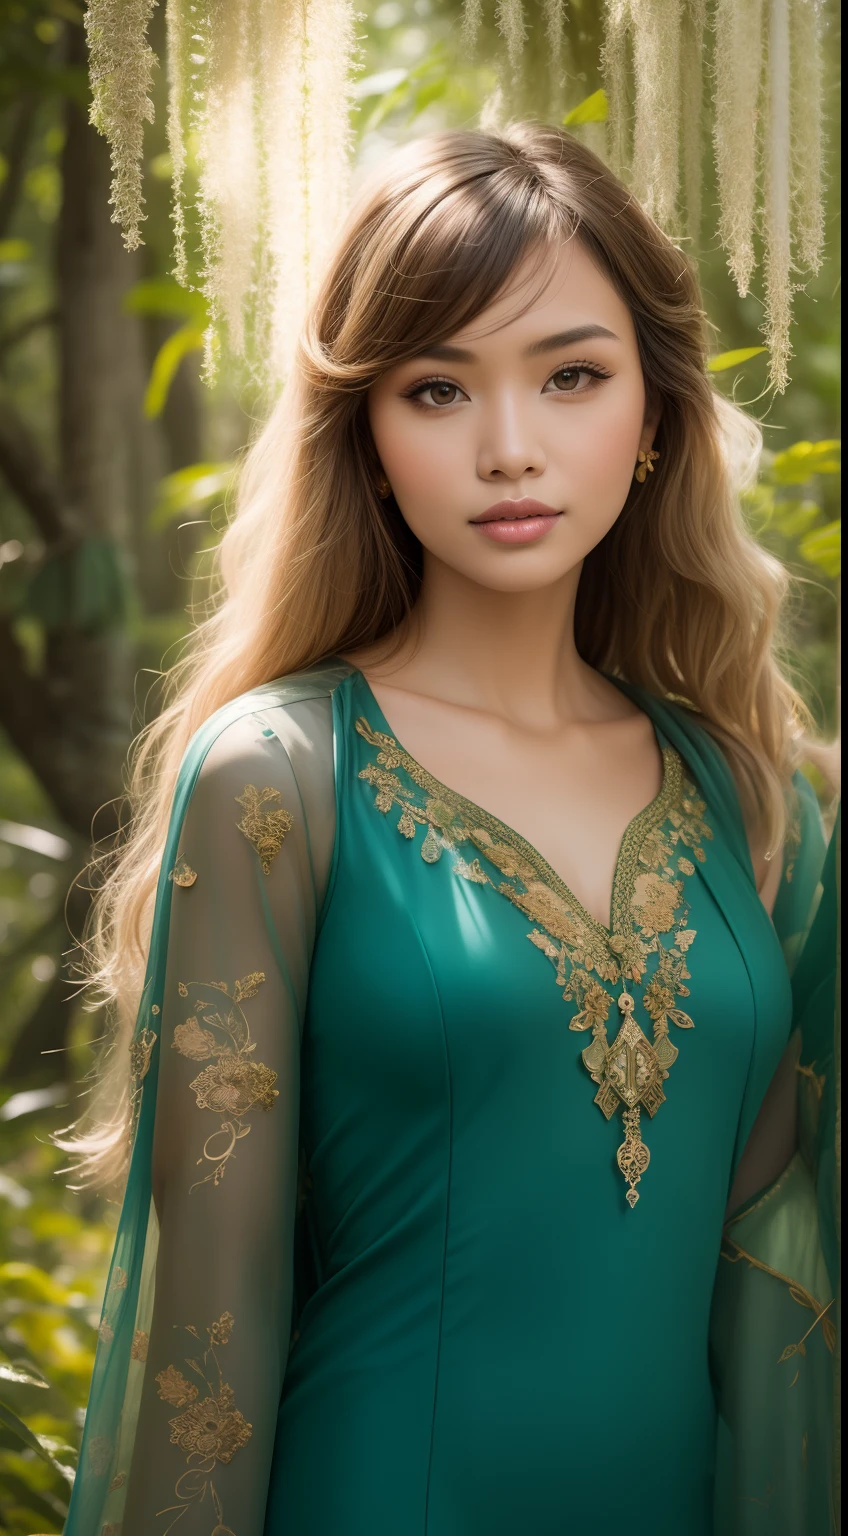 Crie um retrato místico da floresta com a mulher malaia em um ambiente etéreo, Vestido Fluído, cabelo loiro médio com franja, posou entre árvores antigas e cogumelos brilhantes, encarnando o encanto da floresta.